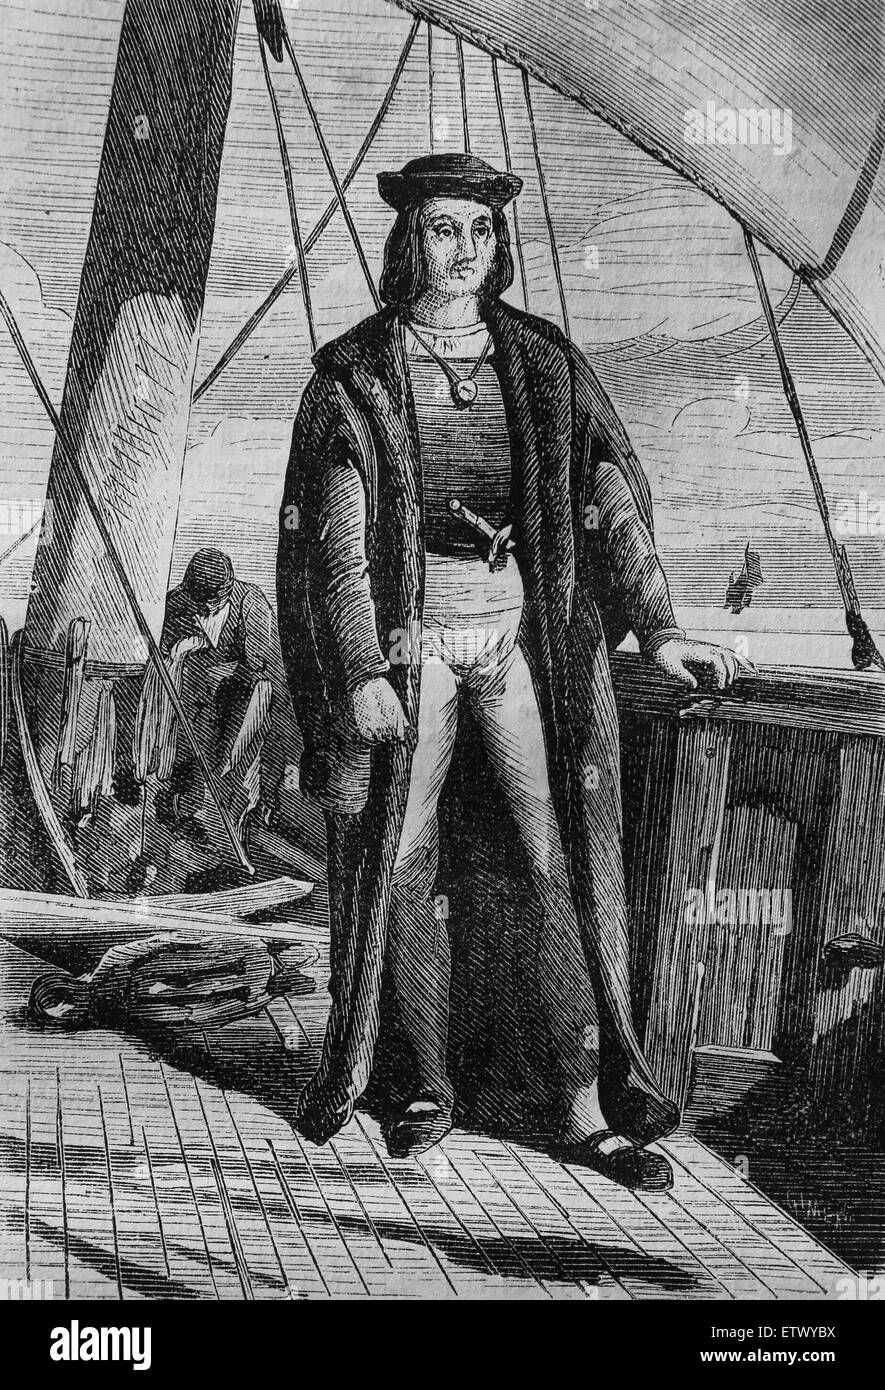 Christopher Columbus (1450-1506). Explorer, Navigation und Kolonisator. Entdecker der neuen Welt. Gravur. des 19. Jahrhunderts. Stockfoto